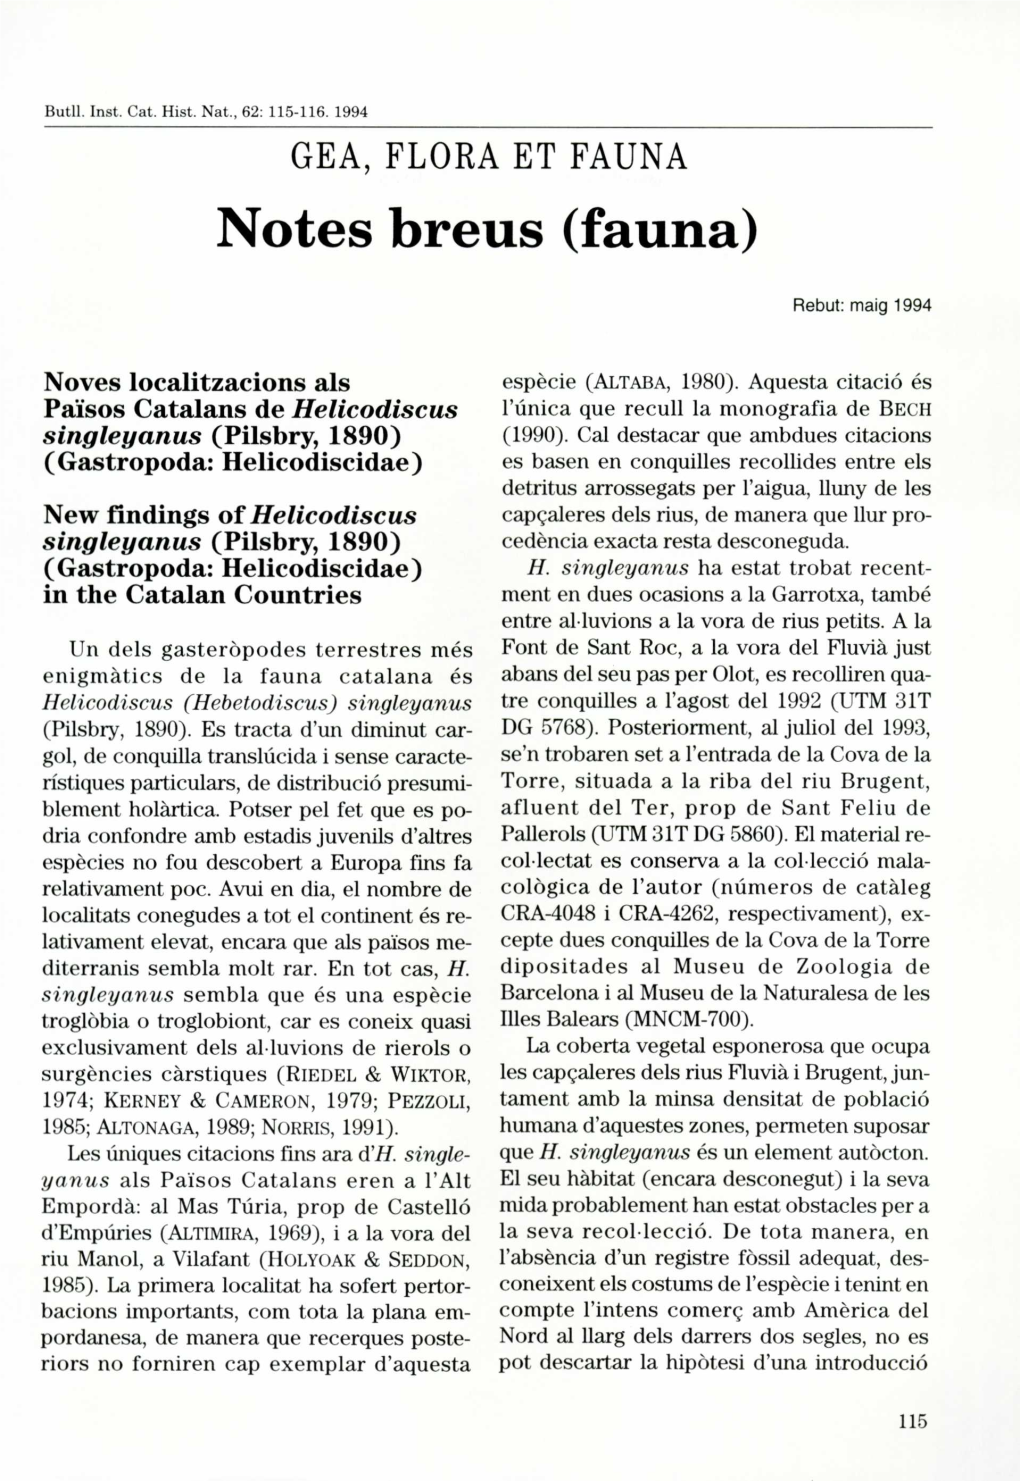 Notes Breus (Fauna)